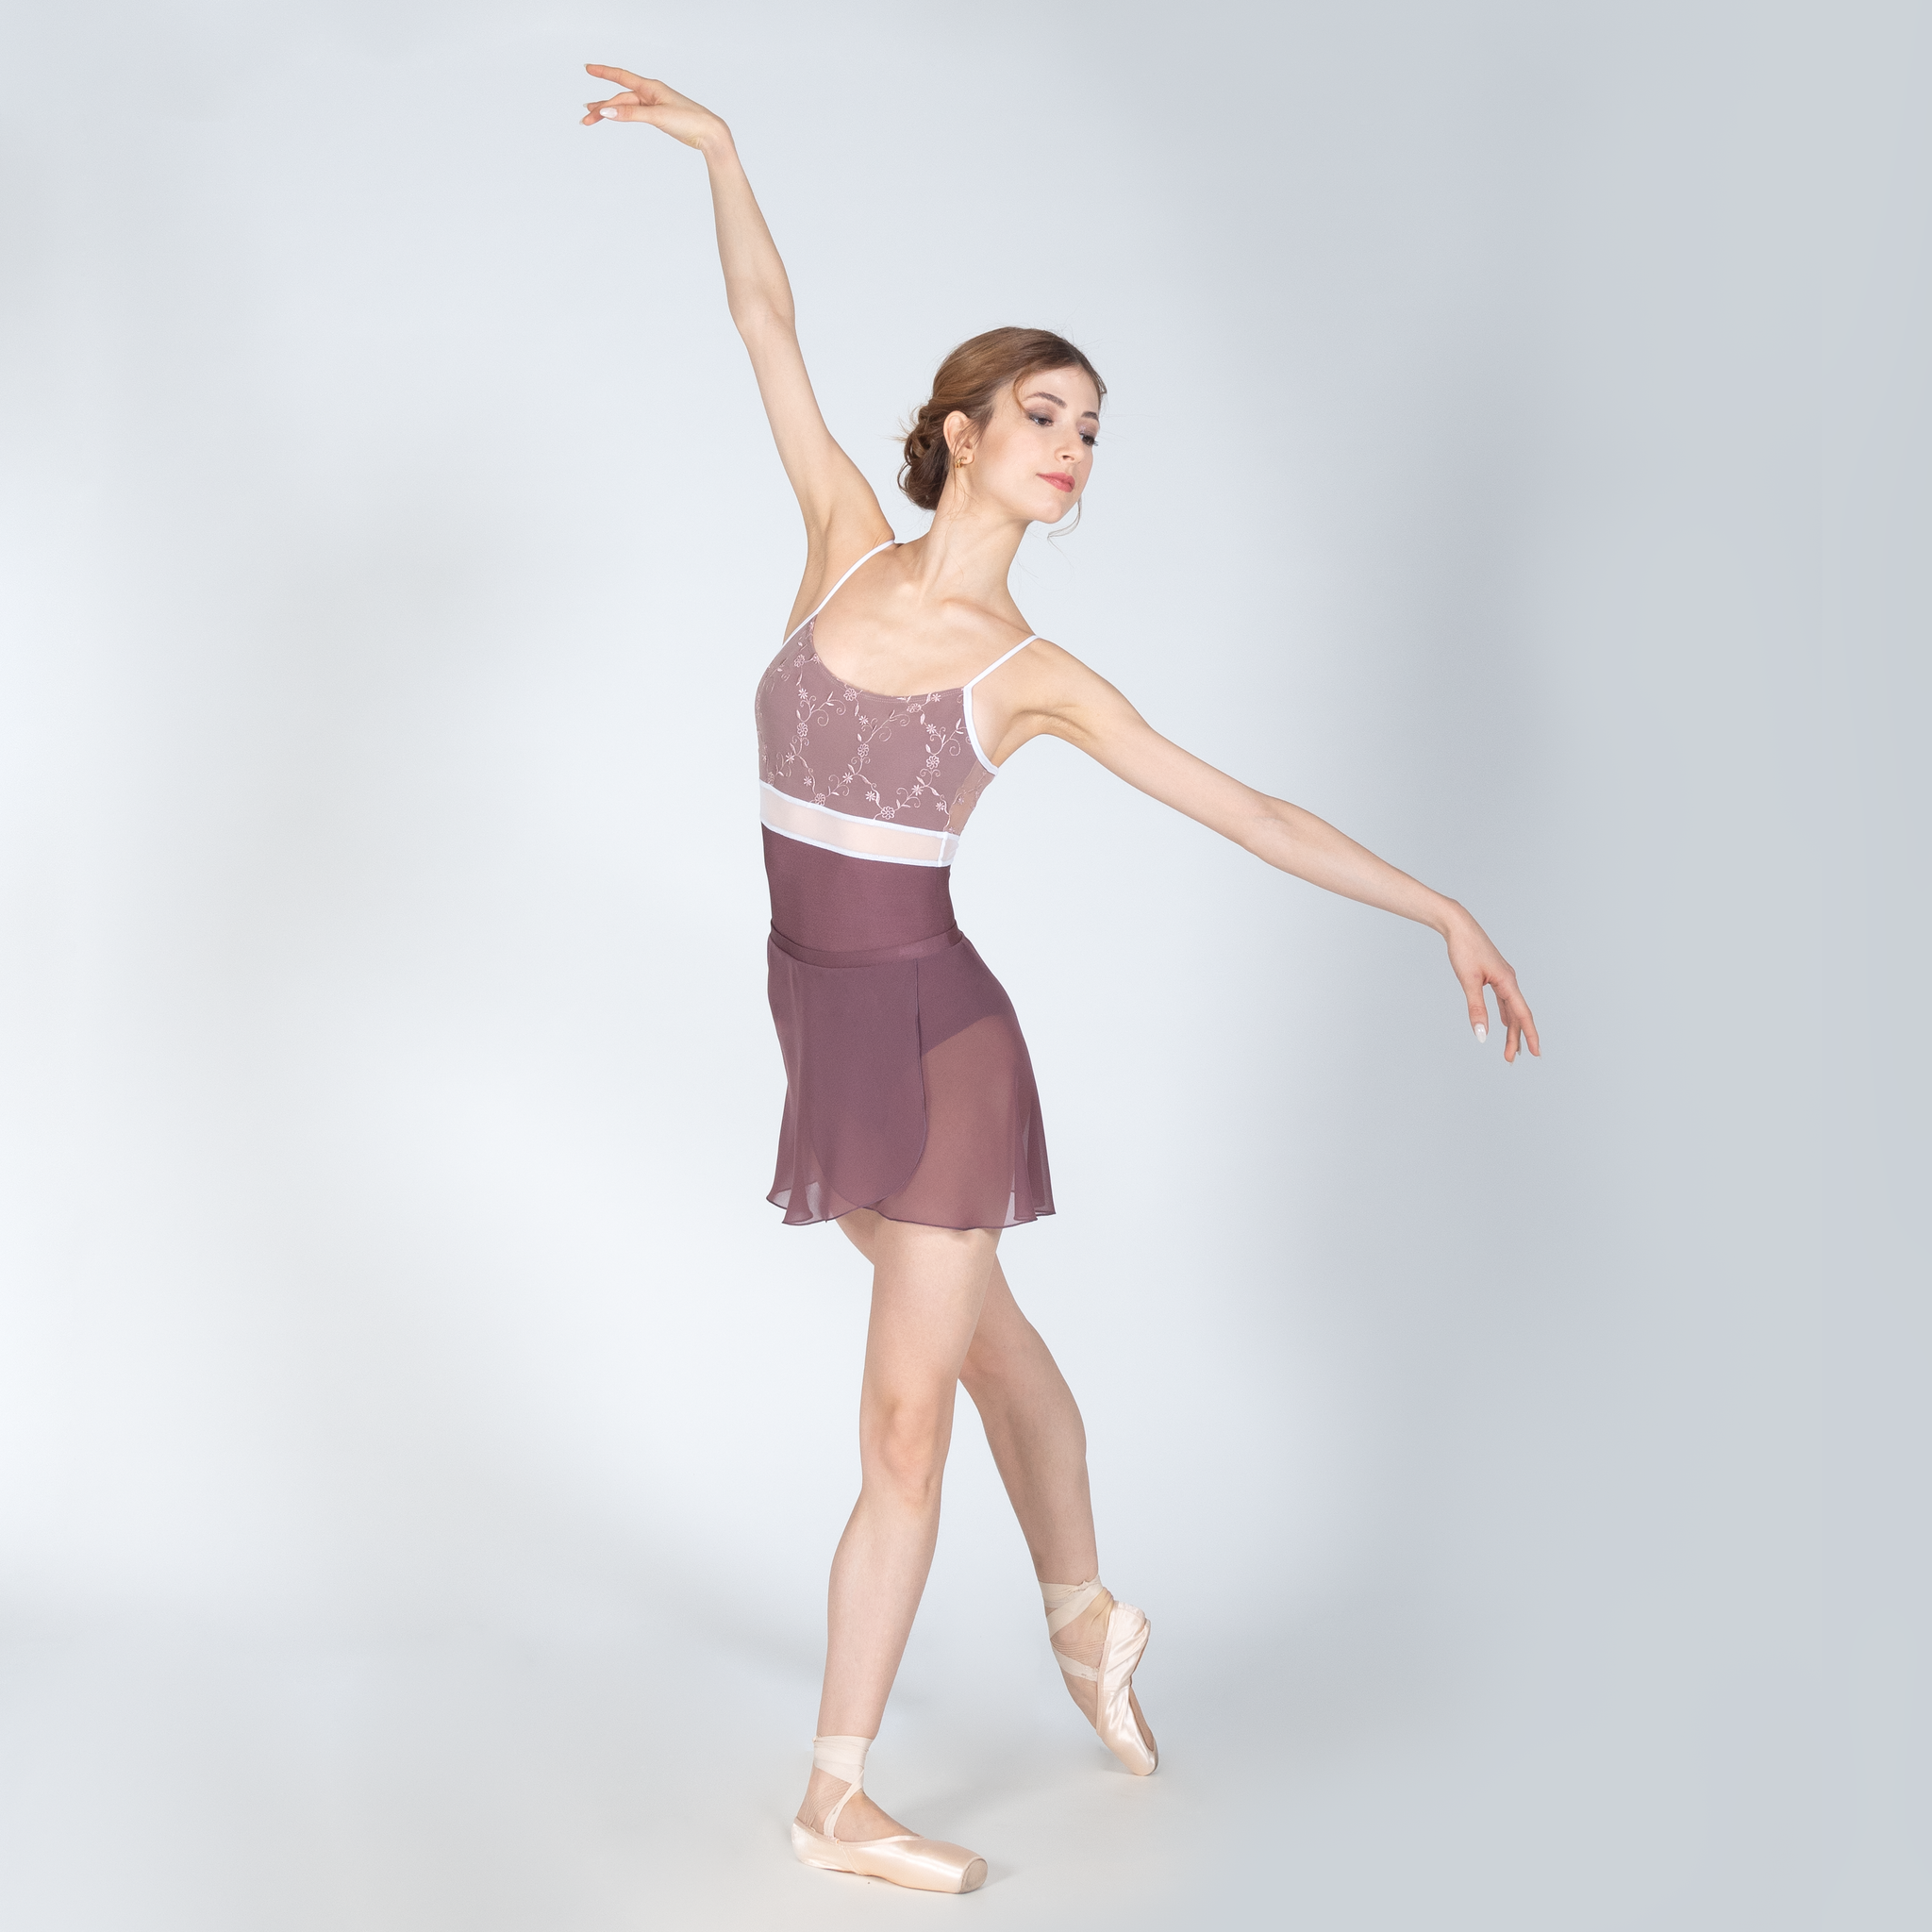 DellaLo' Skirt - Dance skirt